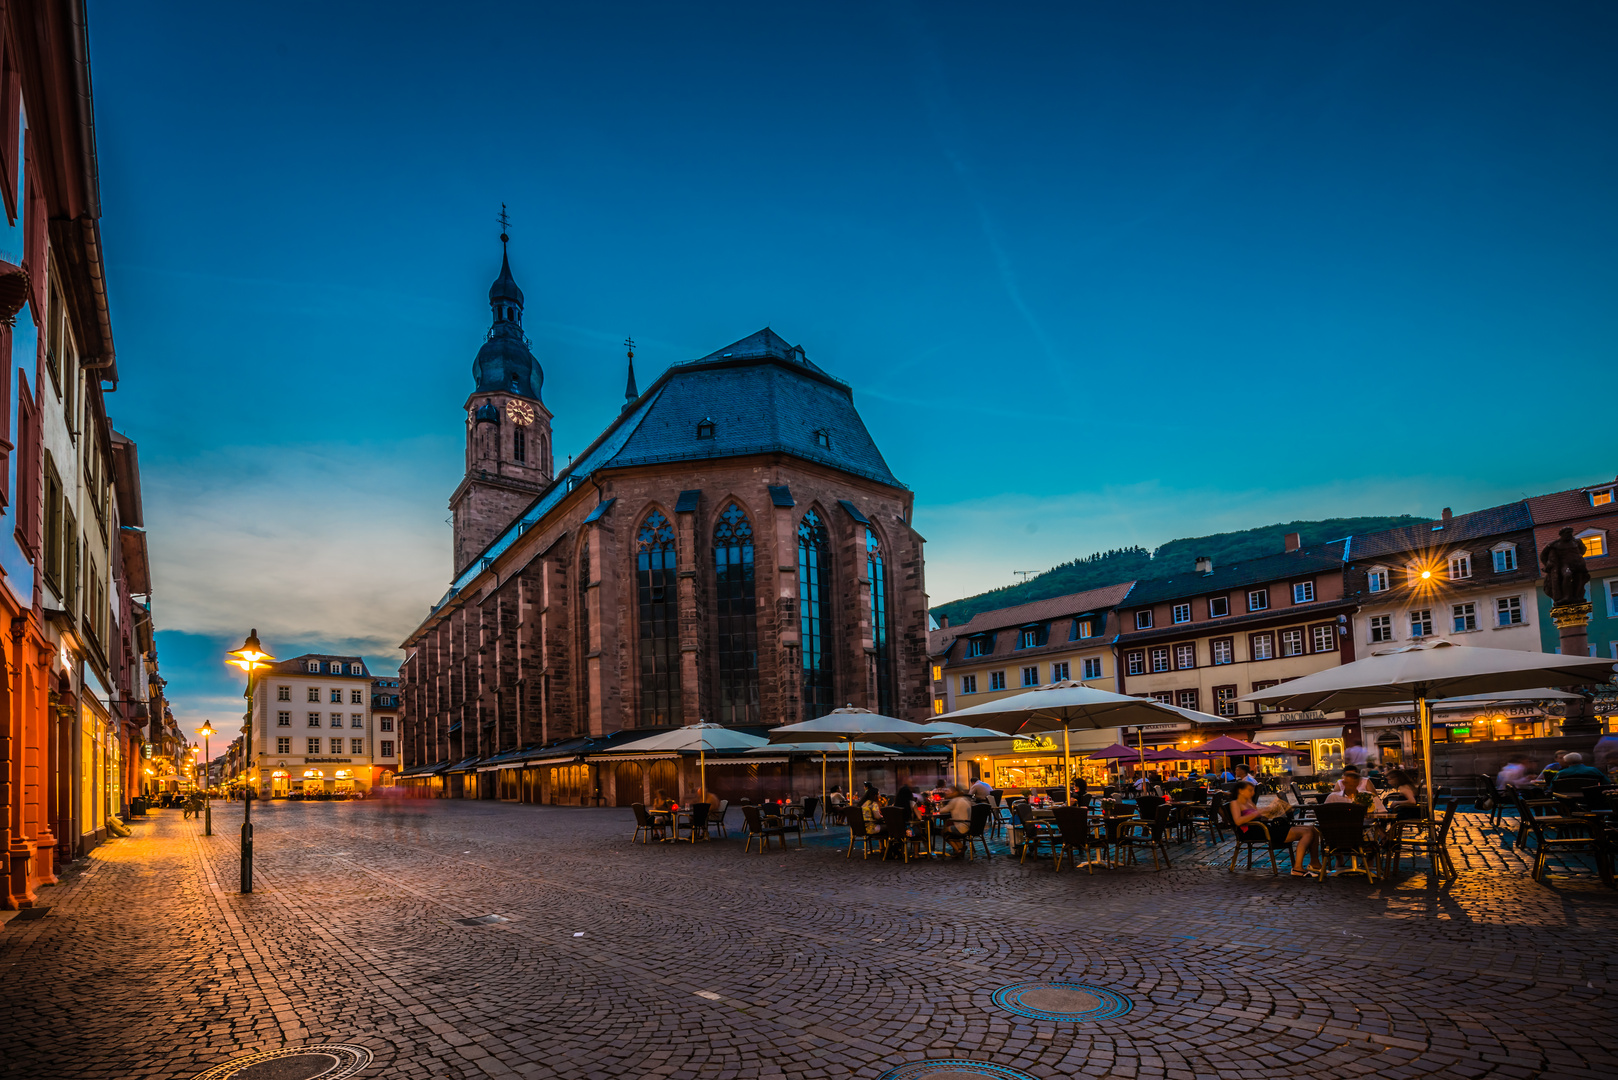 Heiliggeistkirche / Marktplatz Heidelberg